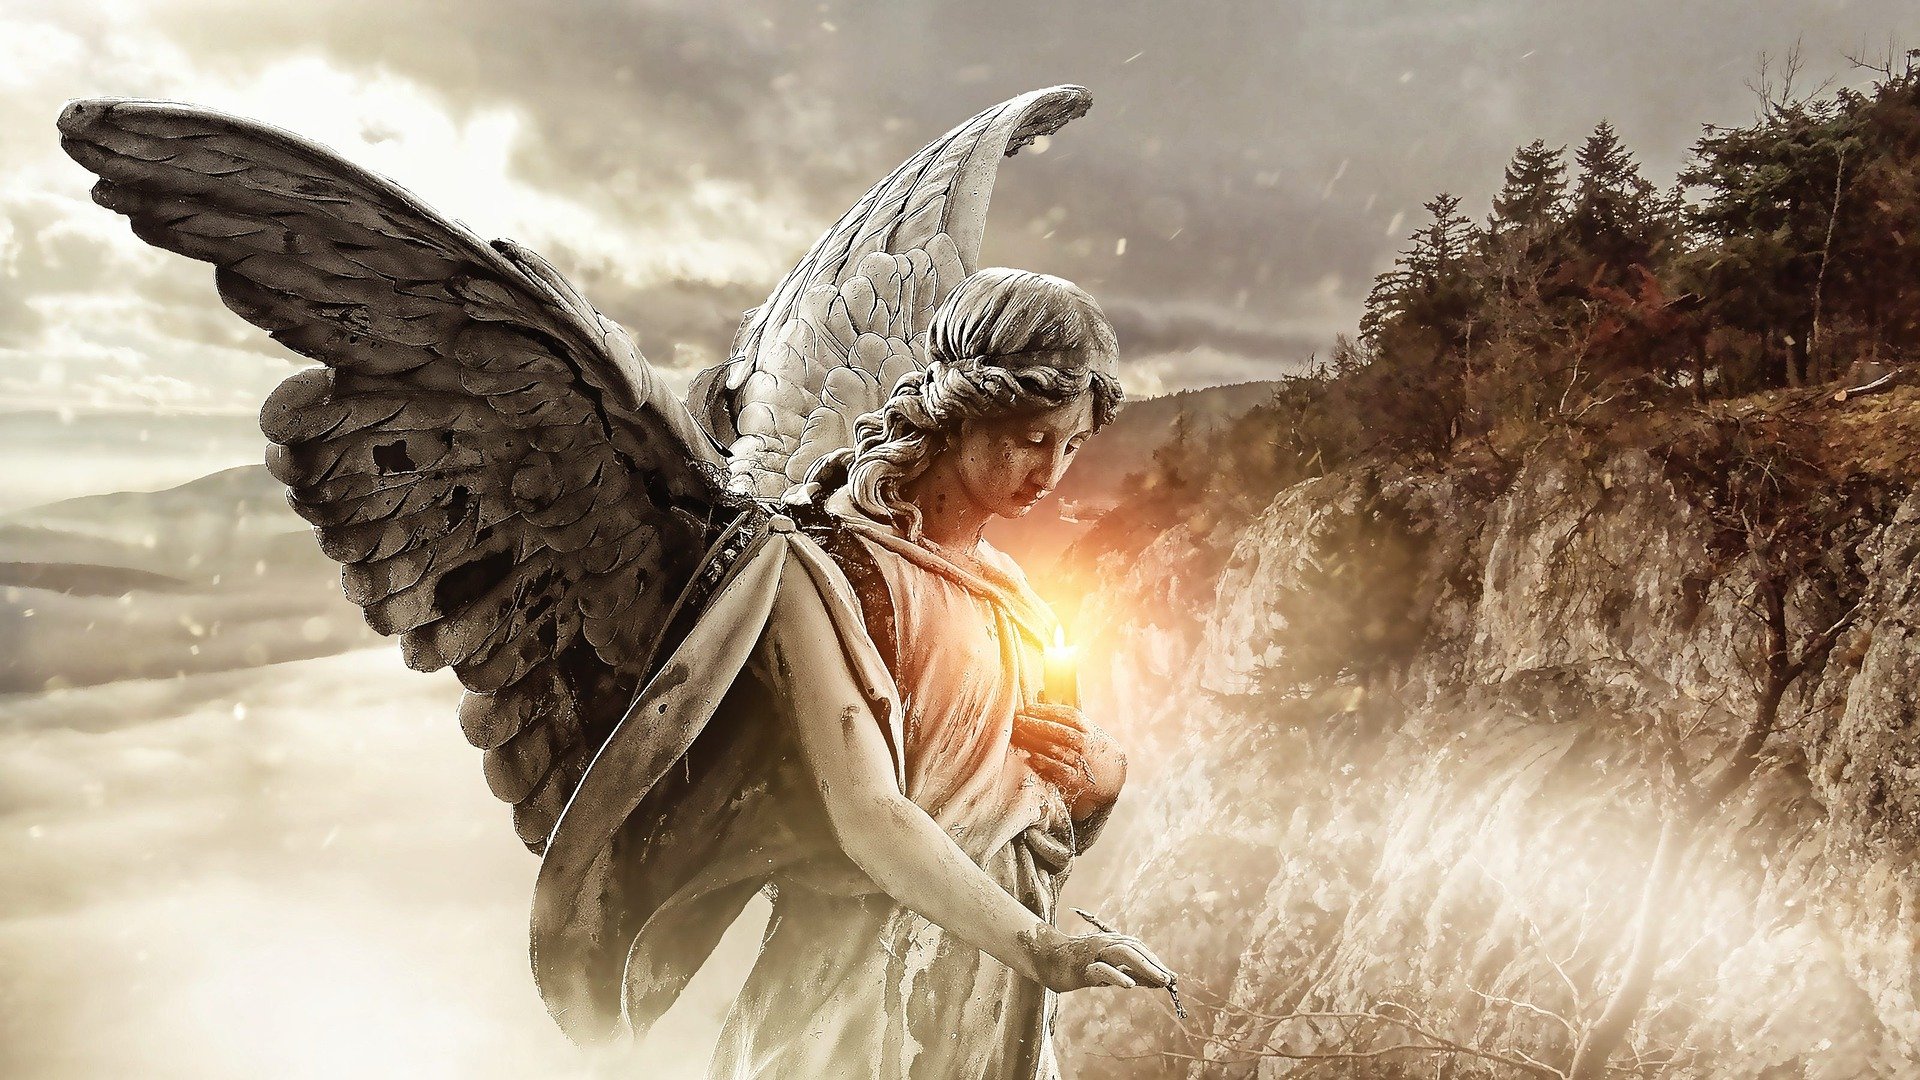  Śniąc o aniele: PIĘKNE ZNAKI, które pokochasz